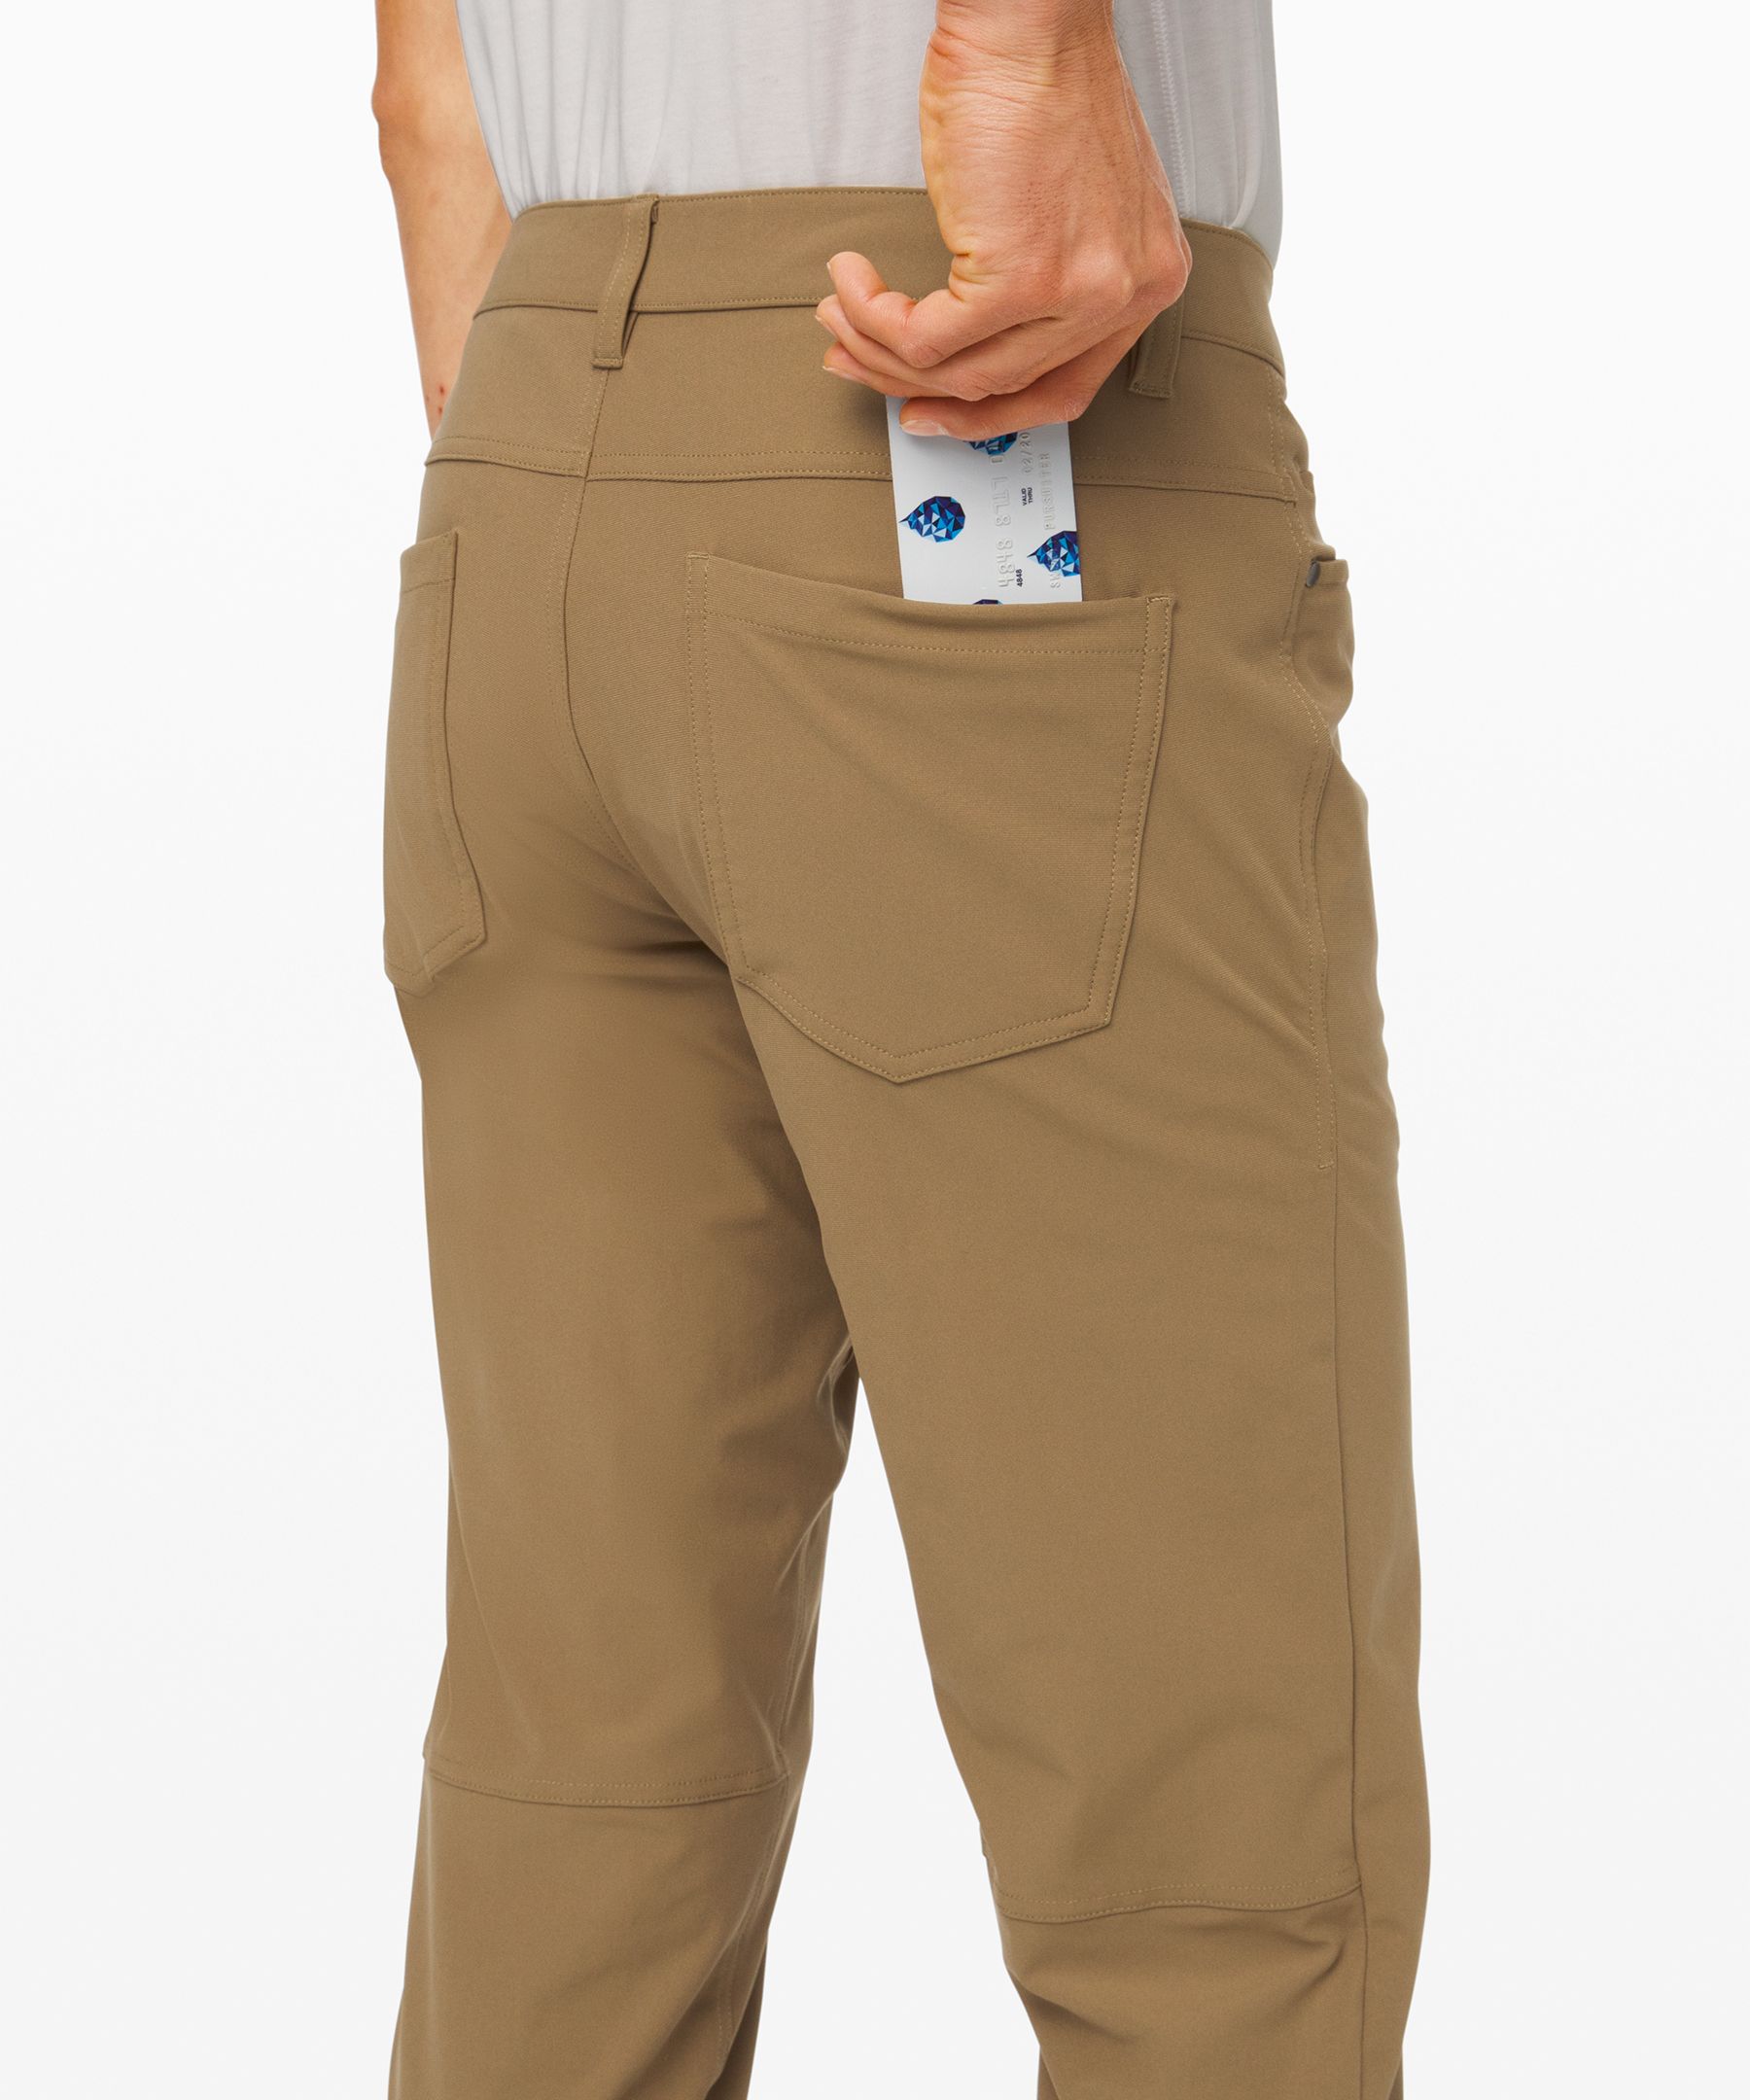 onlineshop discounts Lululemon ABC Pant Classic Tan Men´s sz 30 M5426S Flat  Front Pockets